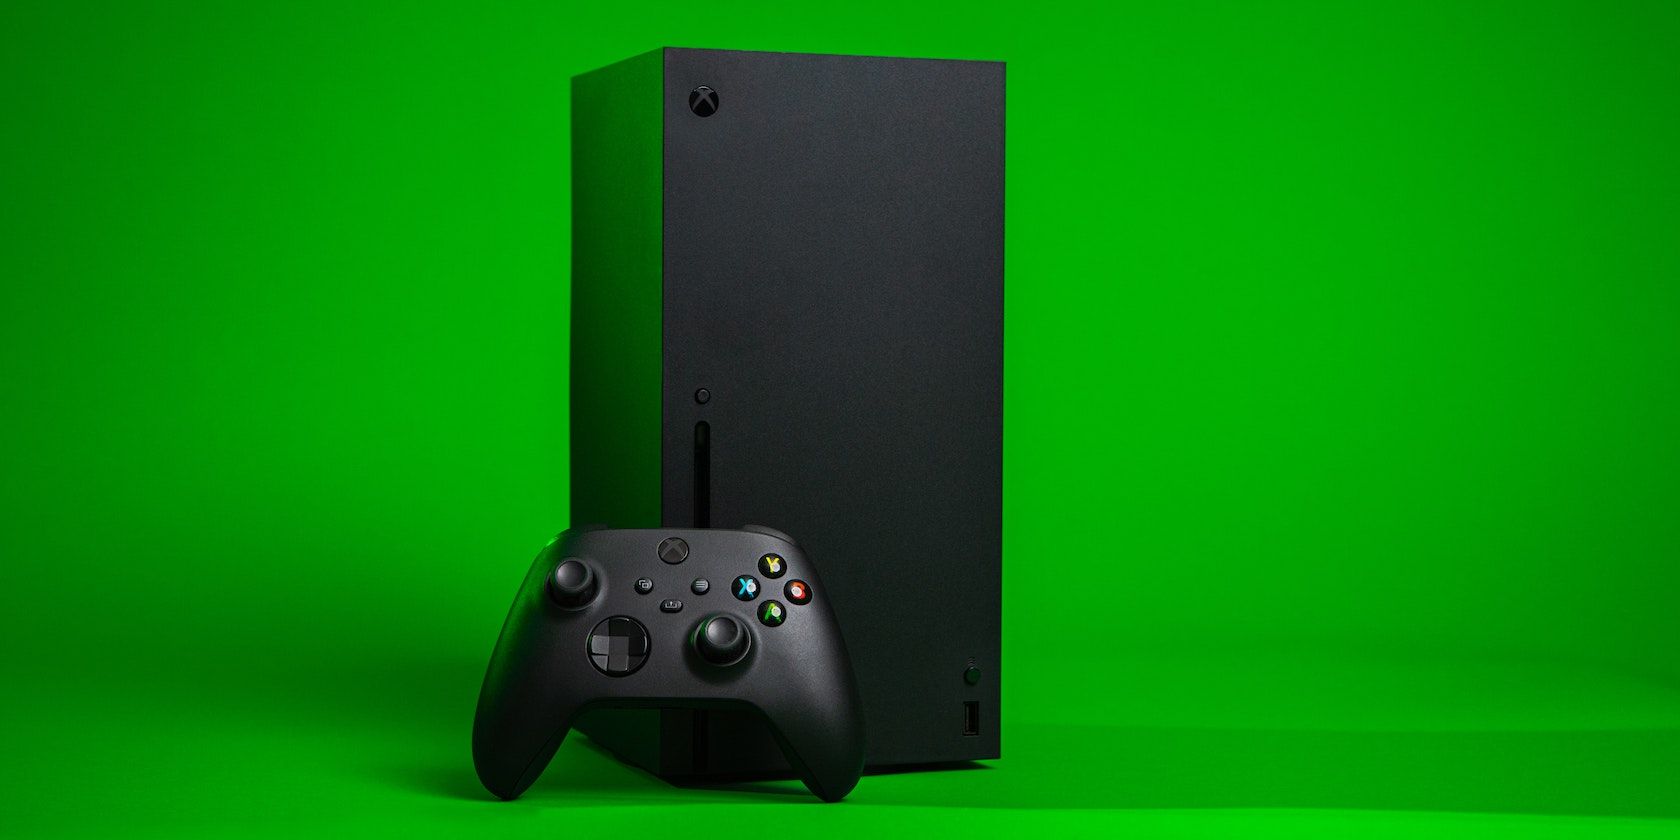 Microsoft, Xbox Series X/S: Hãy khám phá chiếc máy chơi game Xbox Series X/S từ Microsoft với độ phân giải cao và khả năng tương thích vượt trội. Với kiểu dáng hiện đại và đầy phong cách, chiếc Xbox Series X/S sẽ mang lại cho bạn trải nghiệm chơi game tuyệt vời một cách dễ dàng.